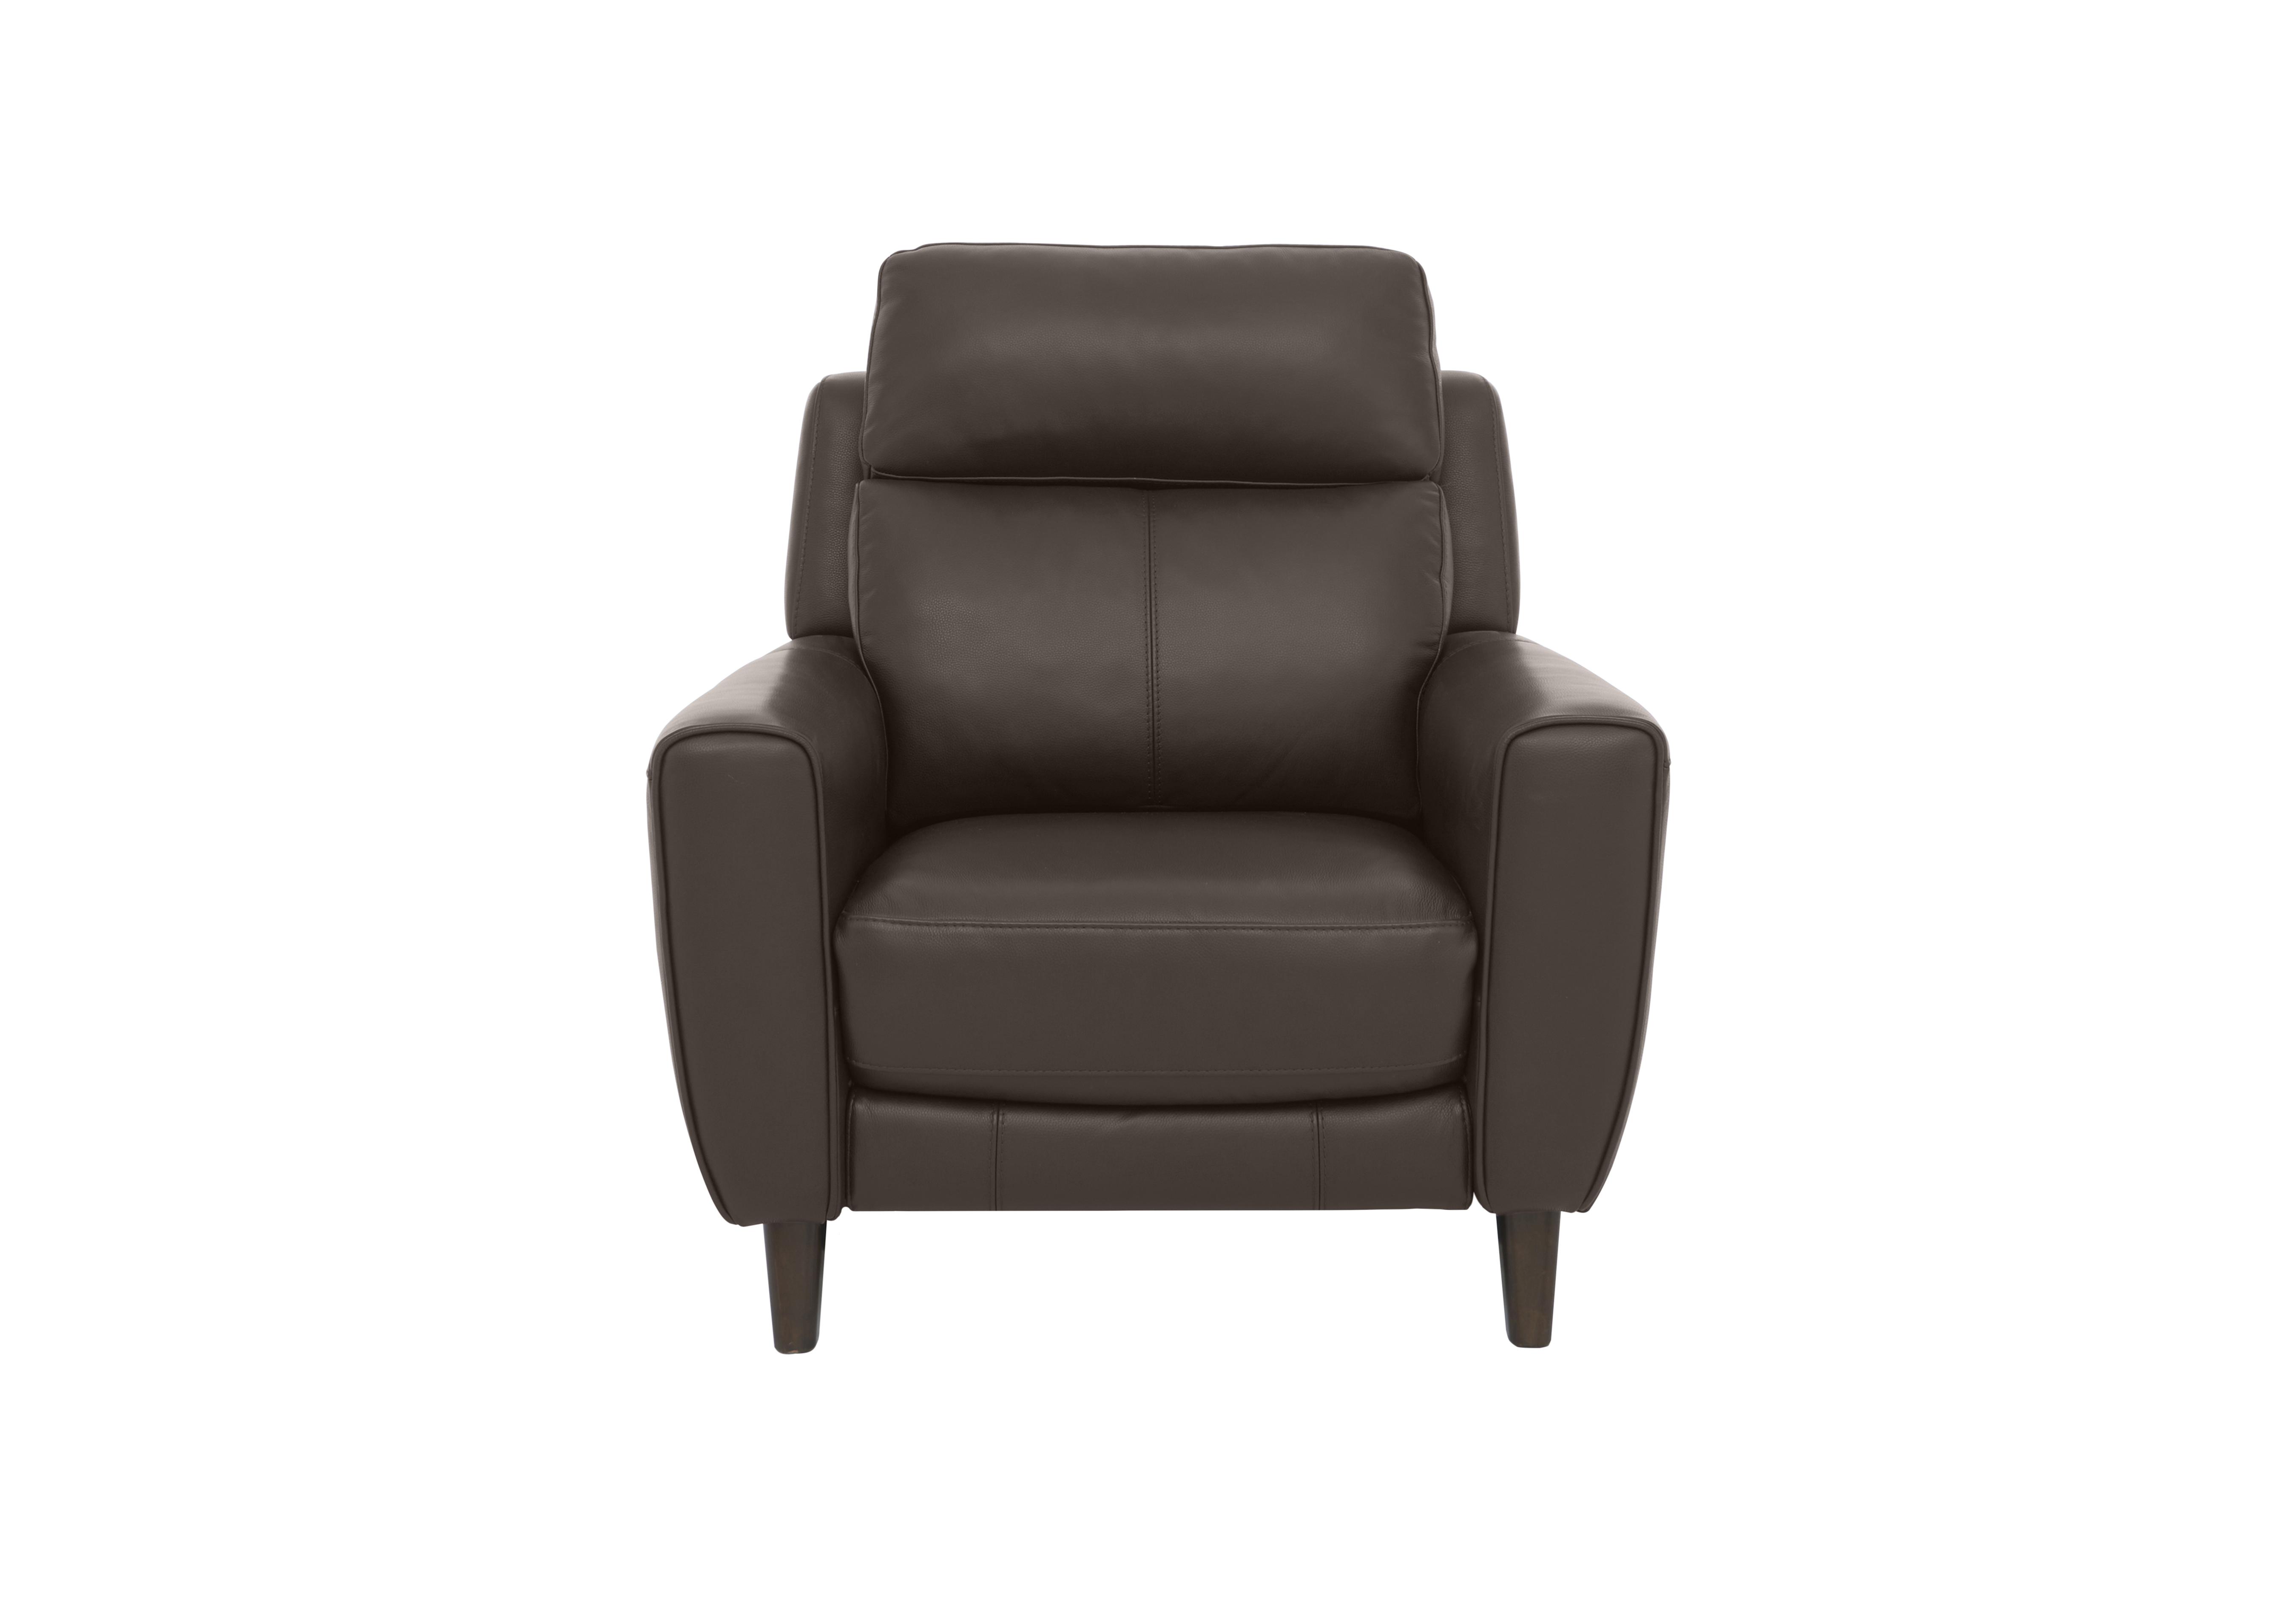 Zen Leather Power Recliner Chair with Power Headrest in Bx-037c Walnut on Furniture Village